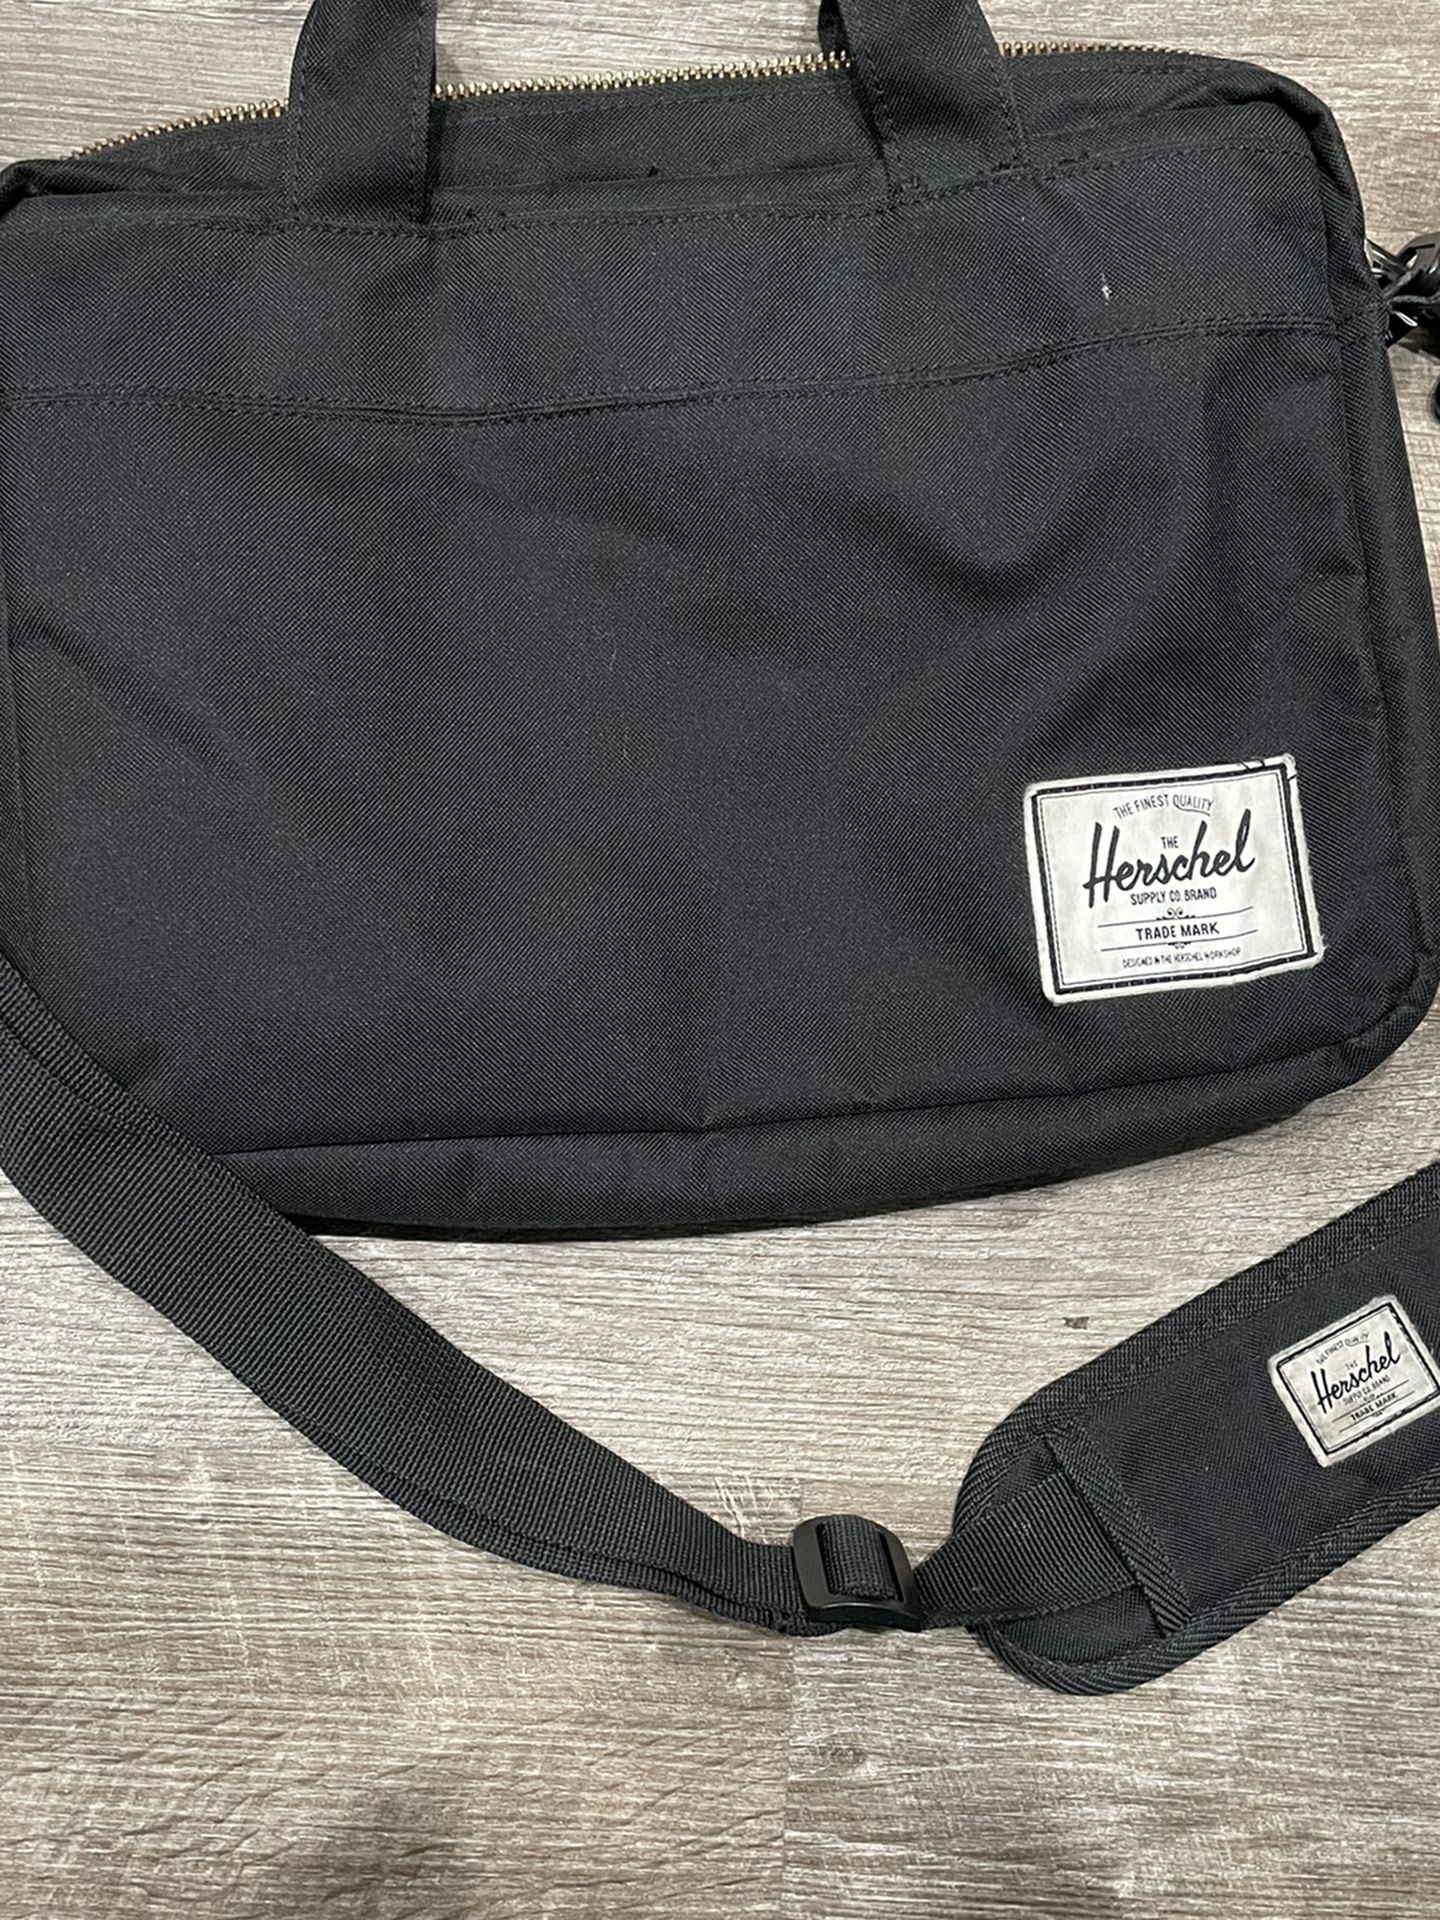 Herschel Messenger Bag